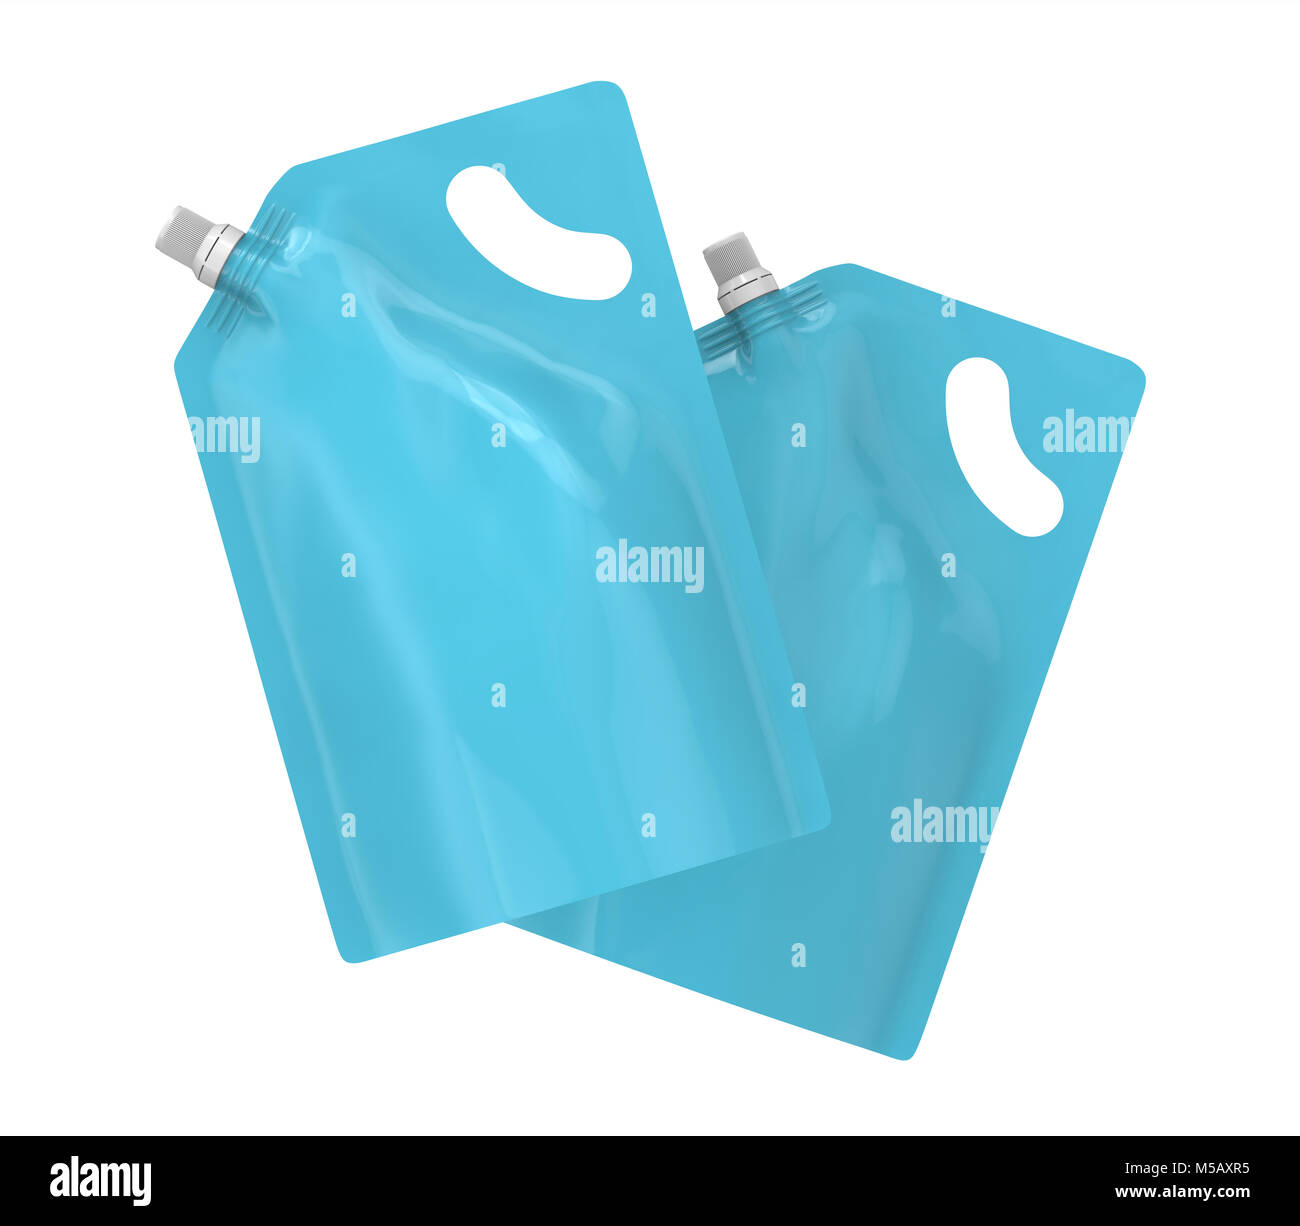 Waschmittel refill Paket, 3d-render Hellblau Standbeutel Tasche mockup mit Kappe, die in der Luft schweben eingestellt Stockfoto